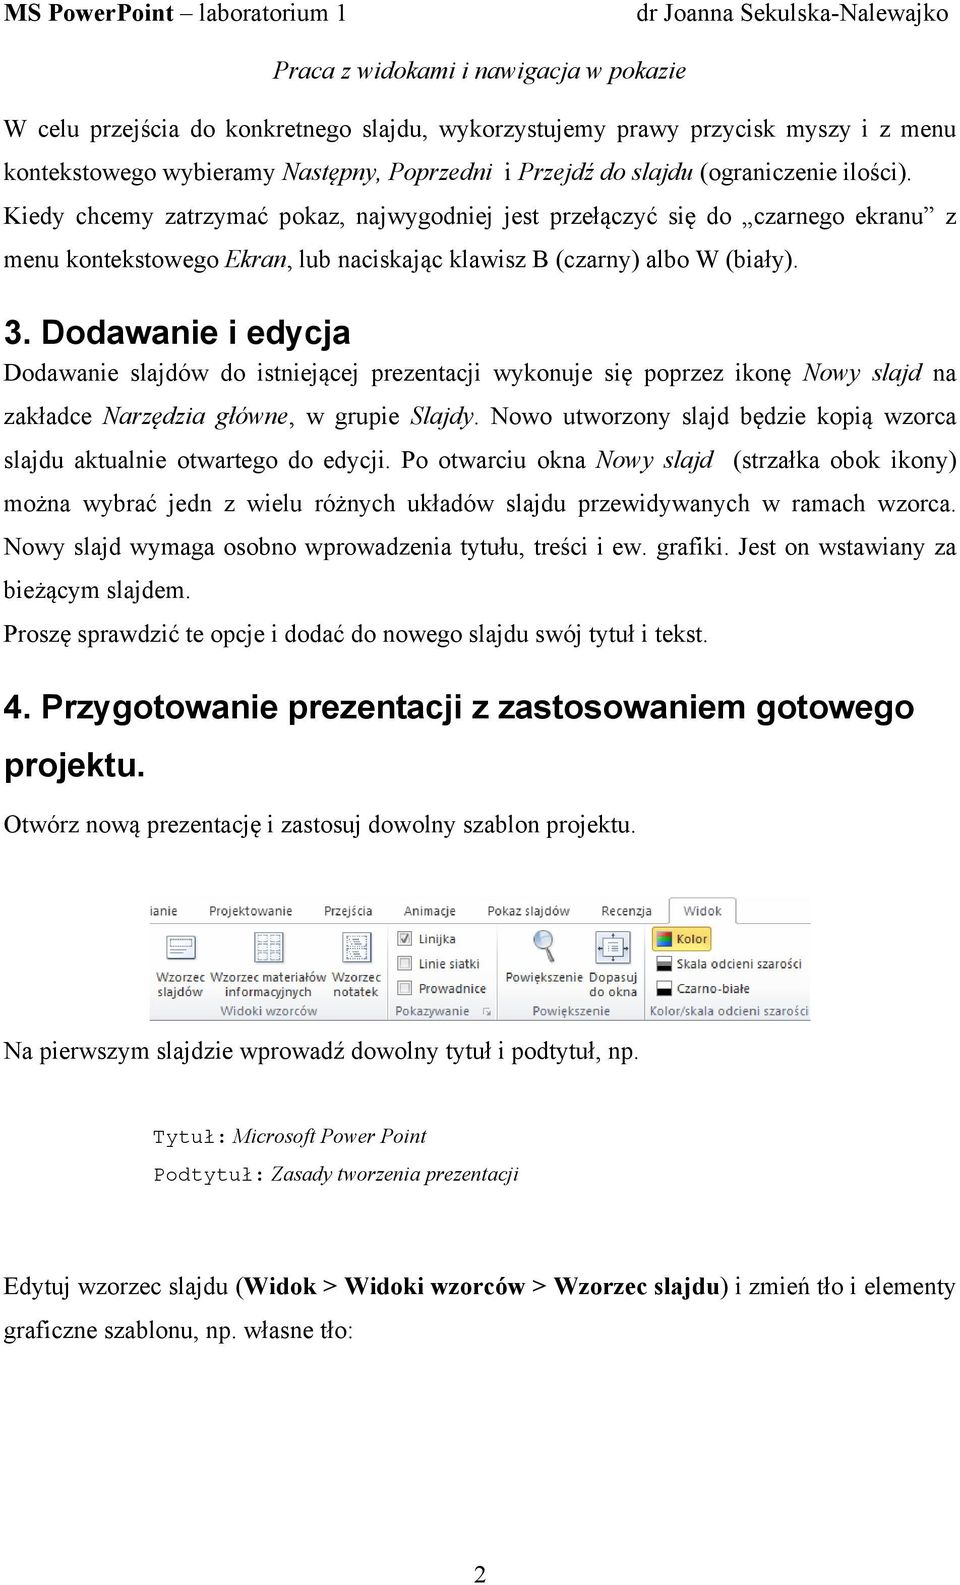 Dodawanie i edycja Dodawanie slajdów do istniejącej prezentacji wykonuje się poprzez ikonę Nowy slajd na zakładce Narzędzia główne, w grupie Slajdy.